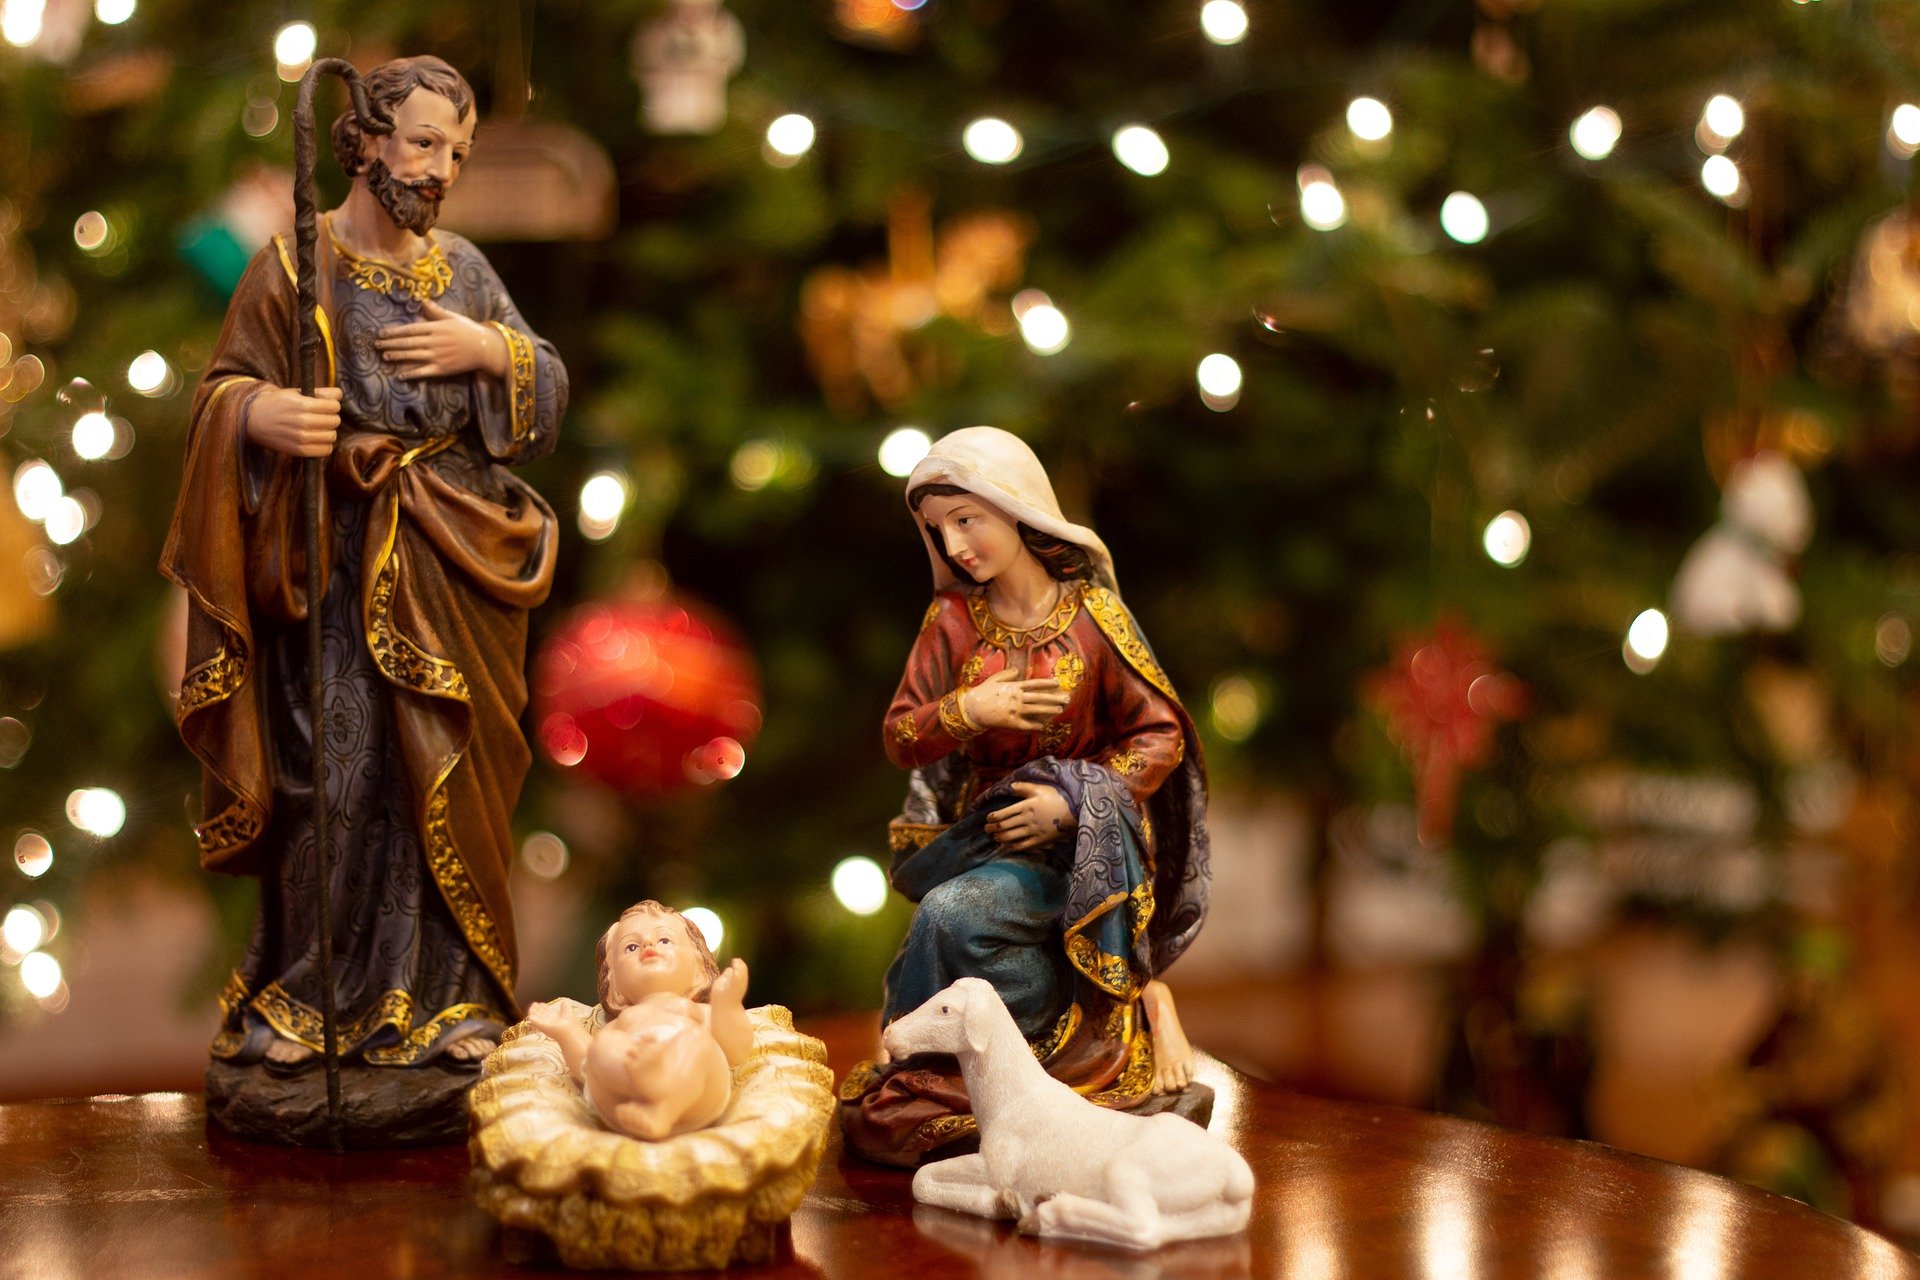 Nativity scene showing Jesus in a manger